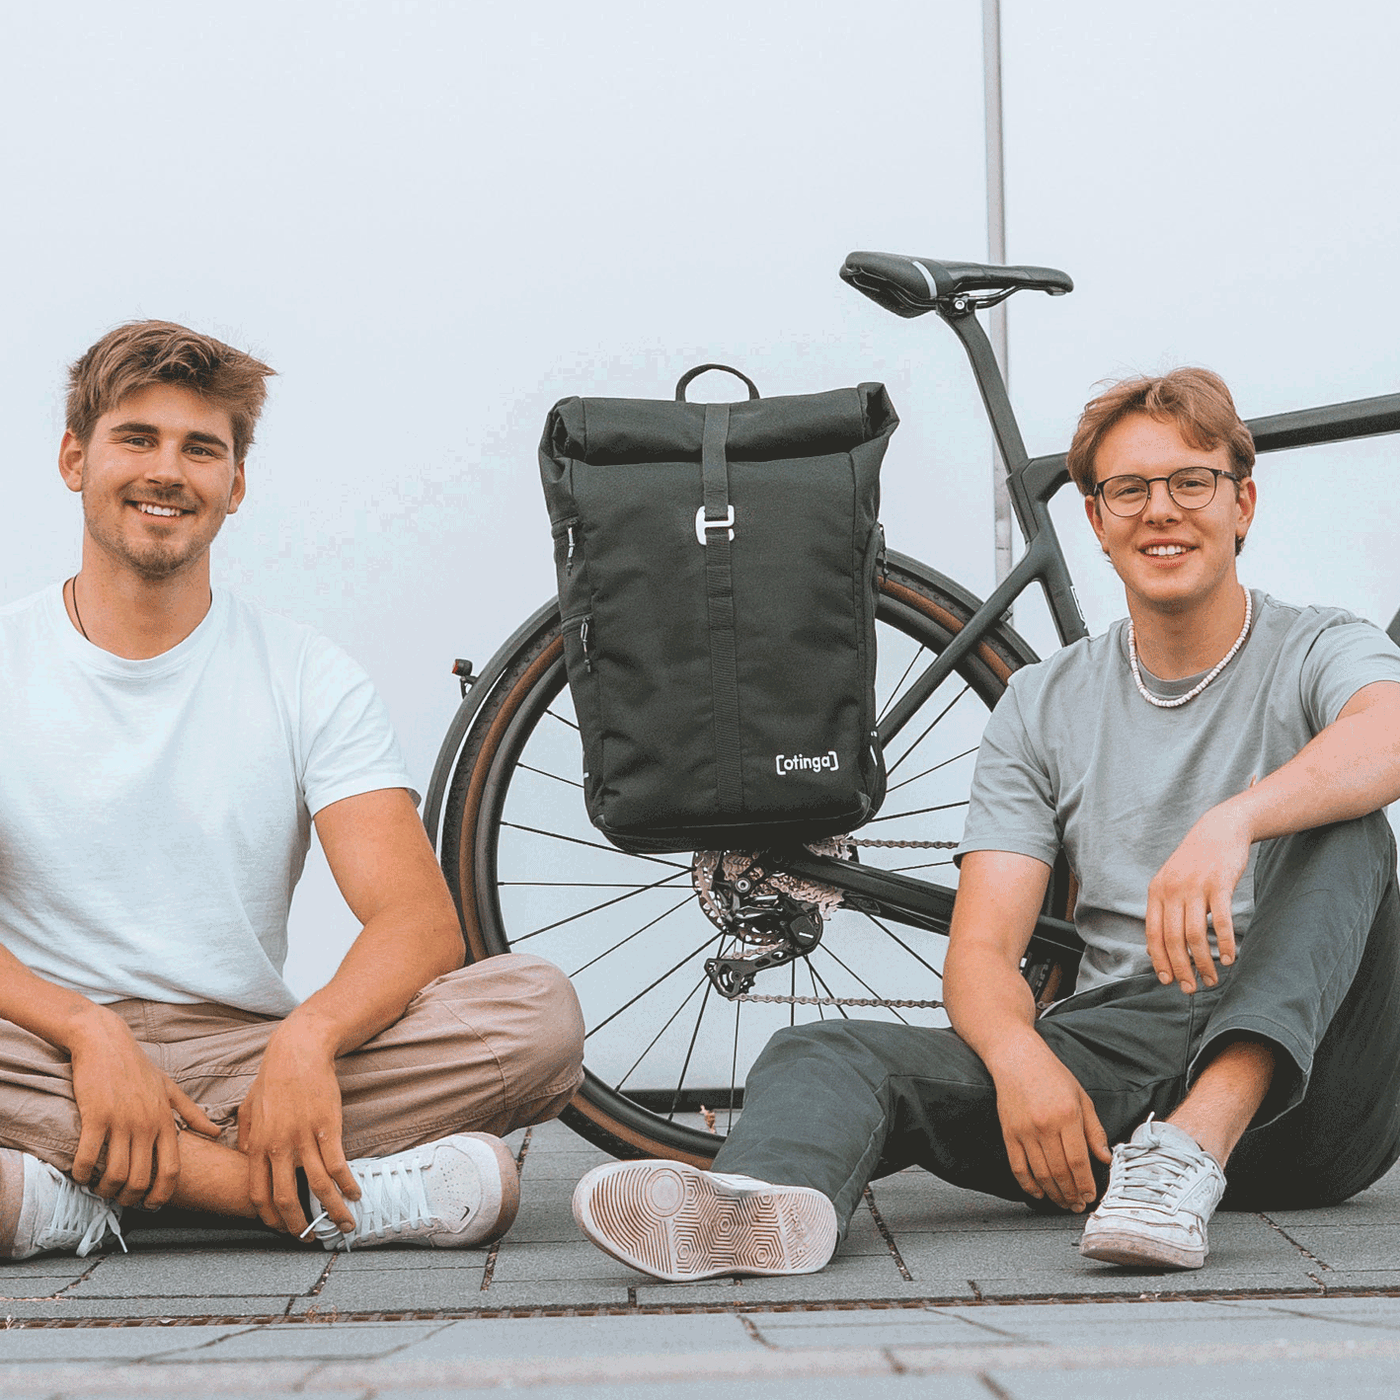 Leander Mellies und Karl Fischer (Aachen, Berlin) die Gründer von otinga / 2bag mit dem Flip / 2bag Rucksack und Fahrradtaschen Kombination auf dem Boden sitzend vor einem Fahrrad